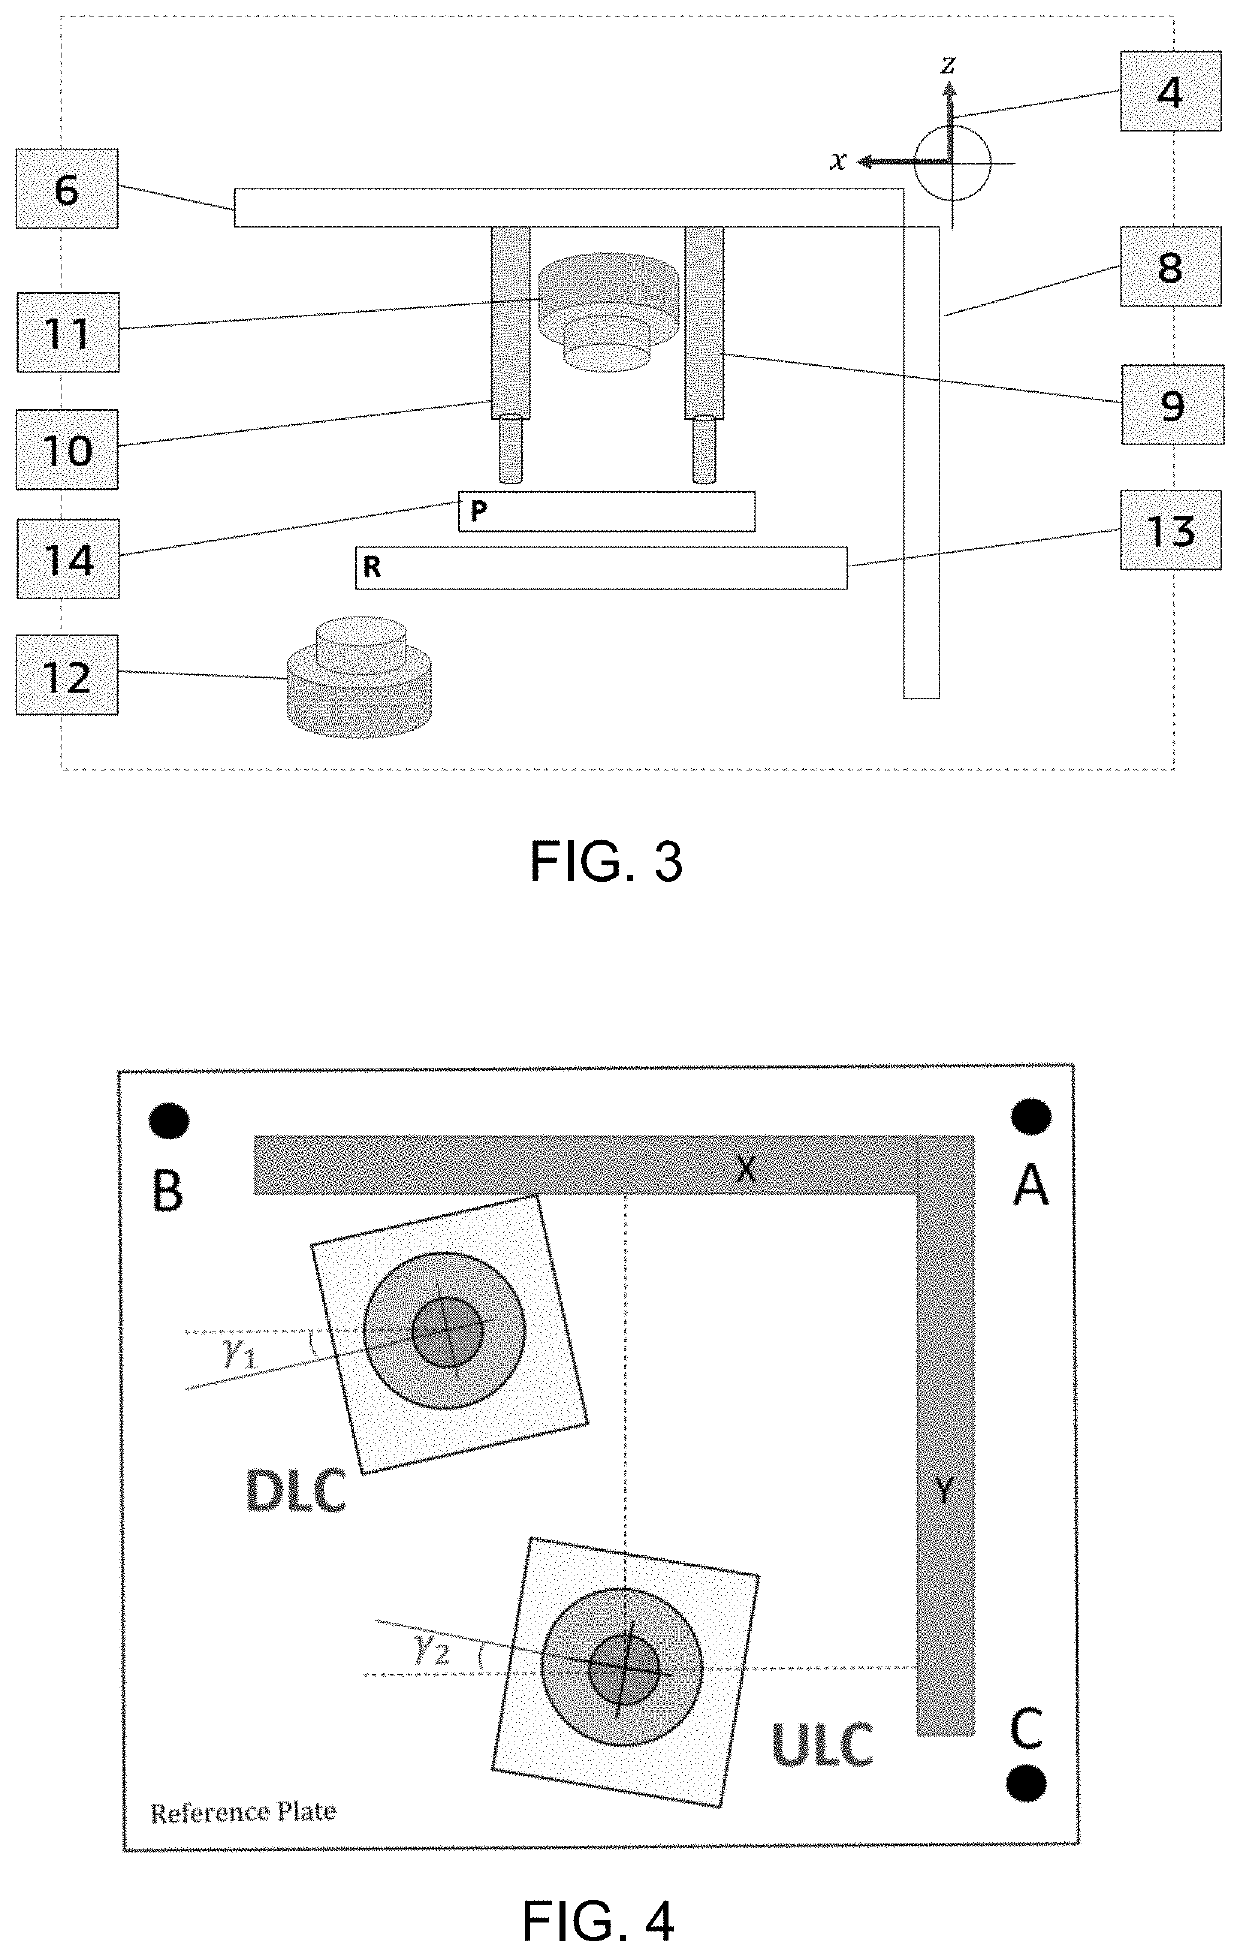 Comprehensive model-based method for gantry robot calibration via a dual camera vision system